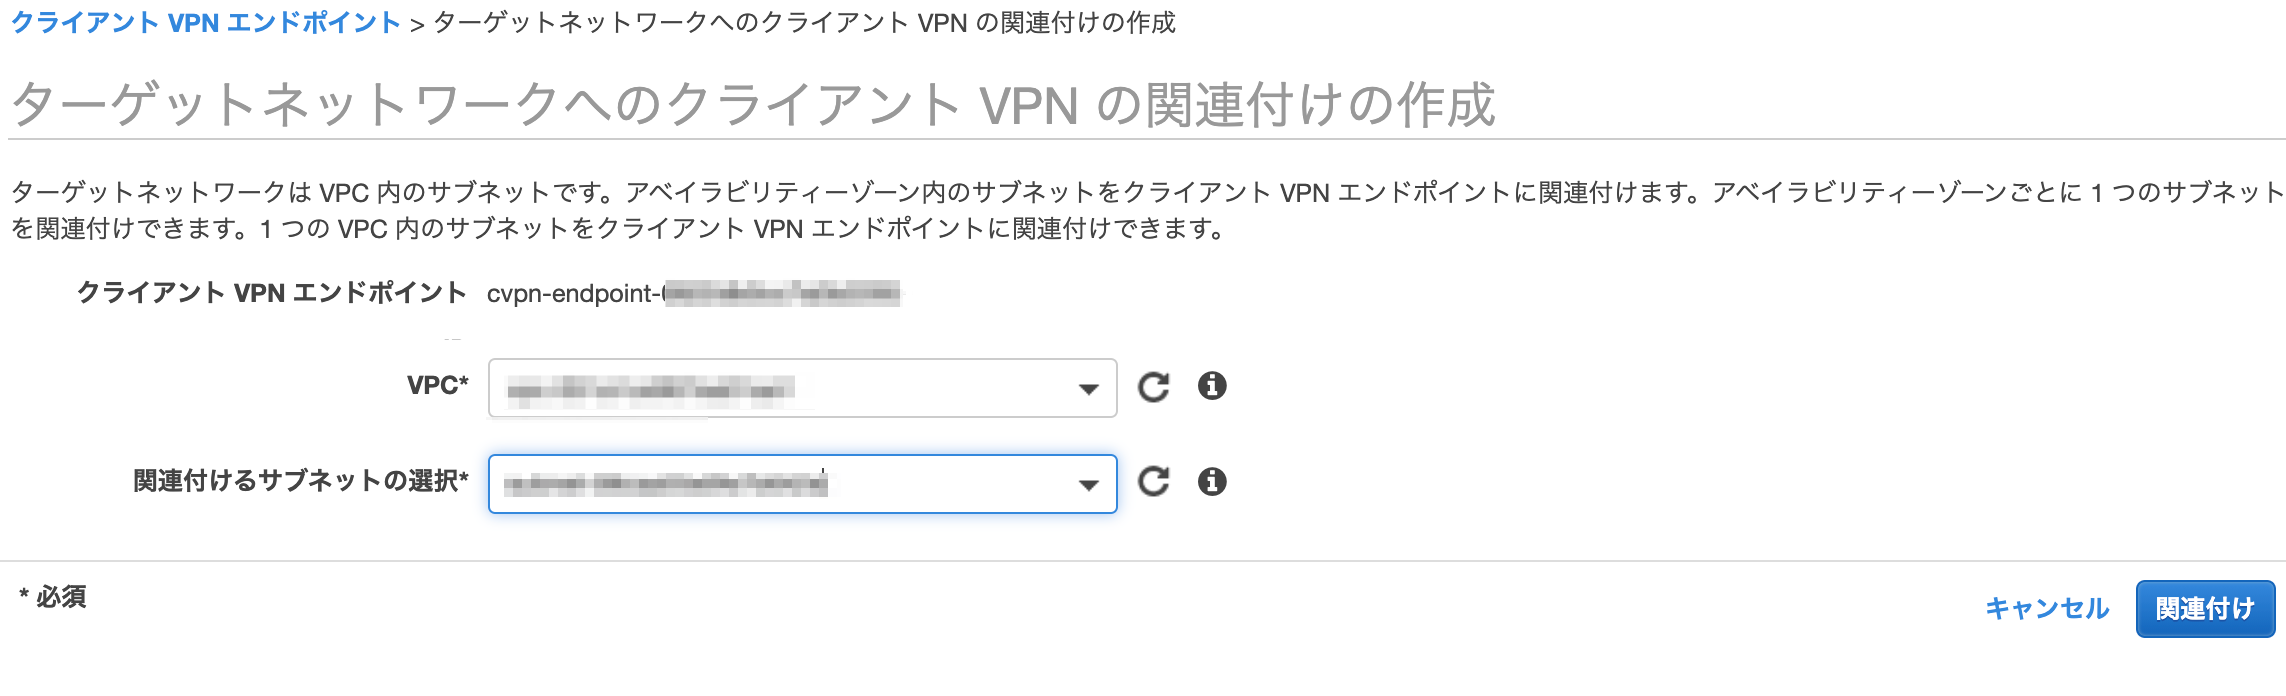 ターゲットネットワークへのクライアント_VPN_の関連付けの作成___VPC_Management_Console.png